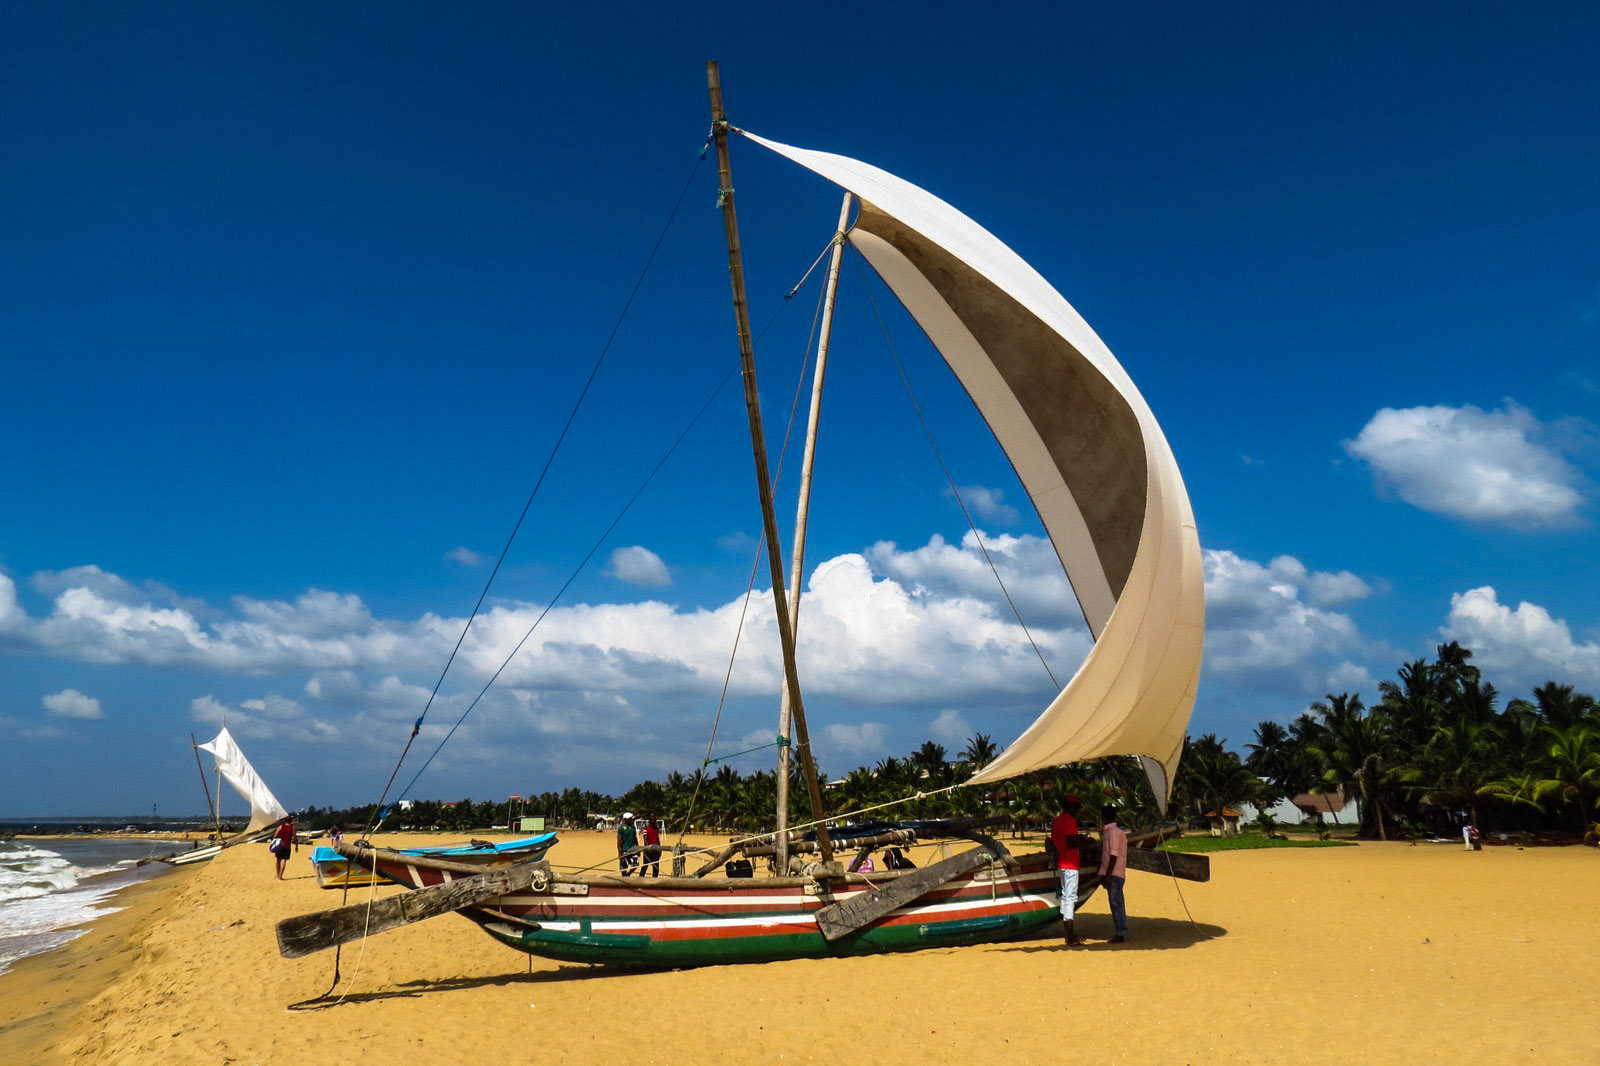 negombo sails full of wind   flashpacking travel blog